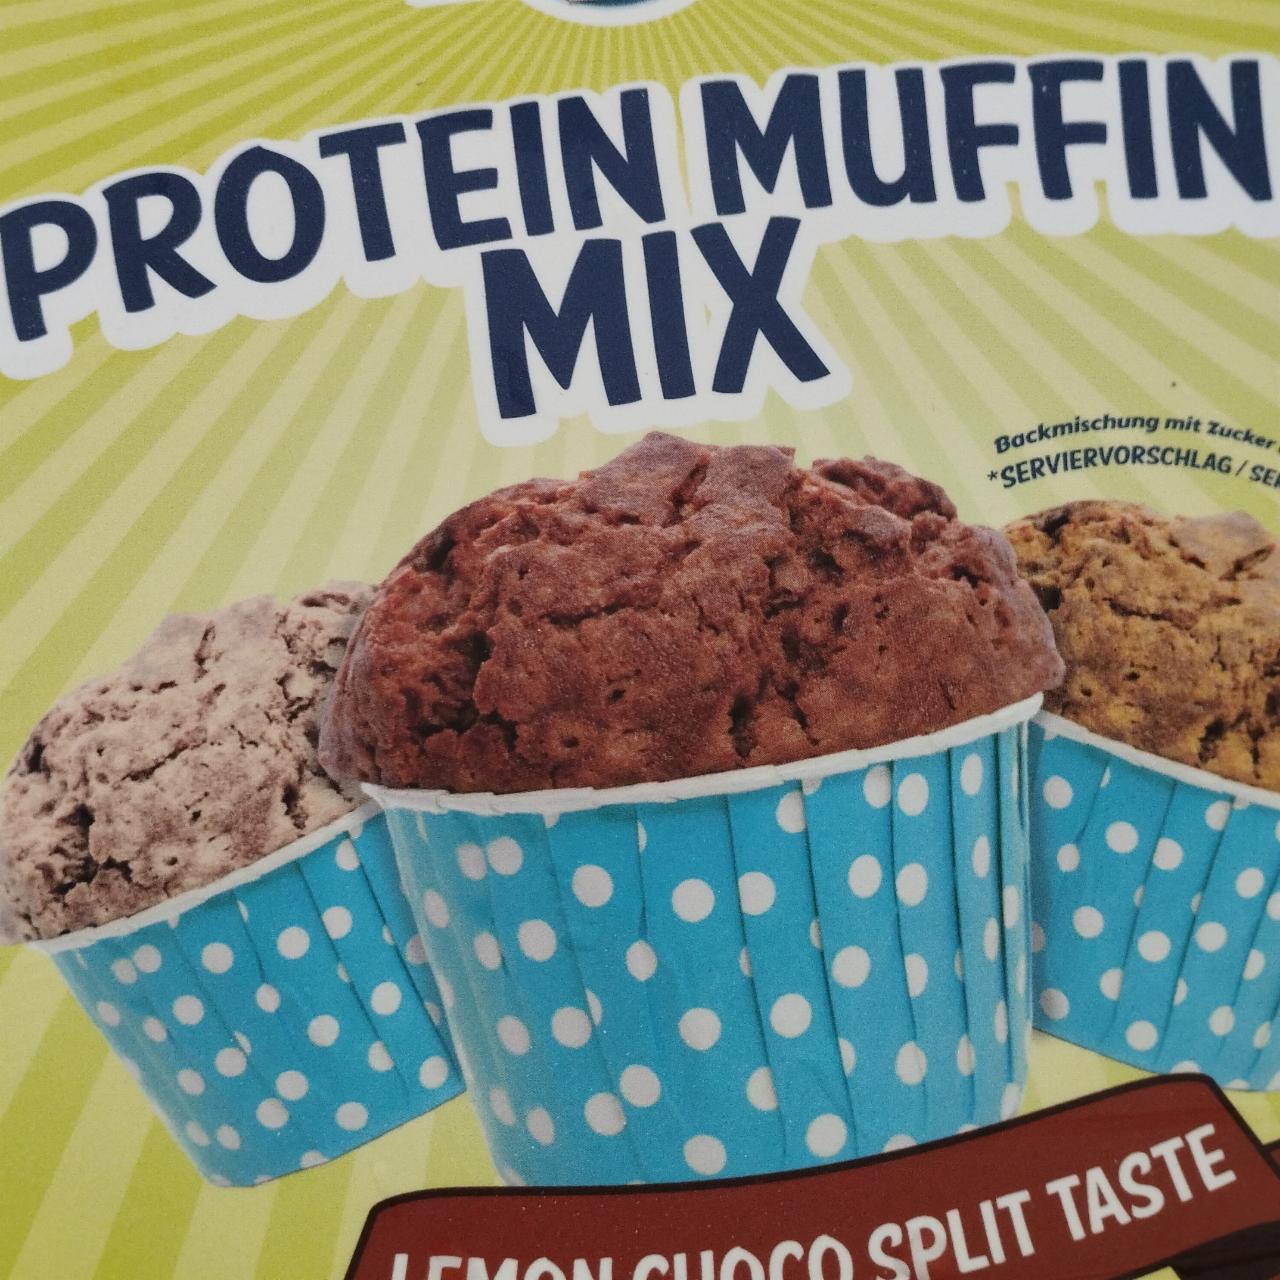 Fotografie - Protein muffin mix Banana choco taste